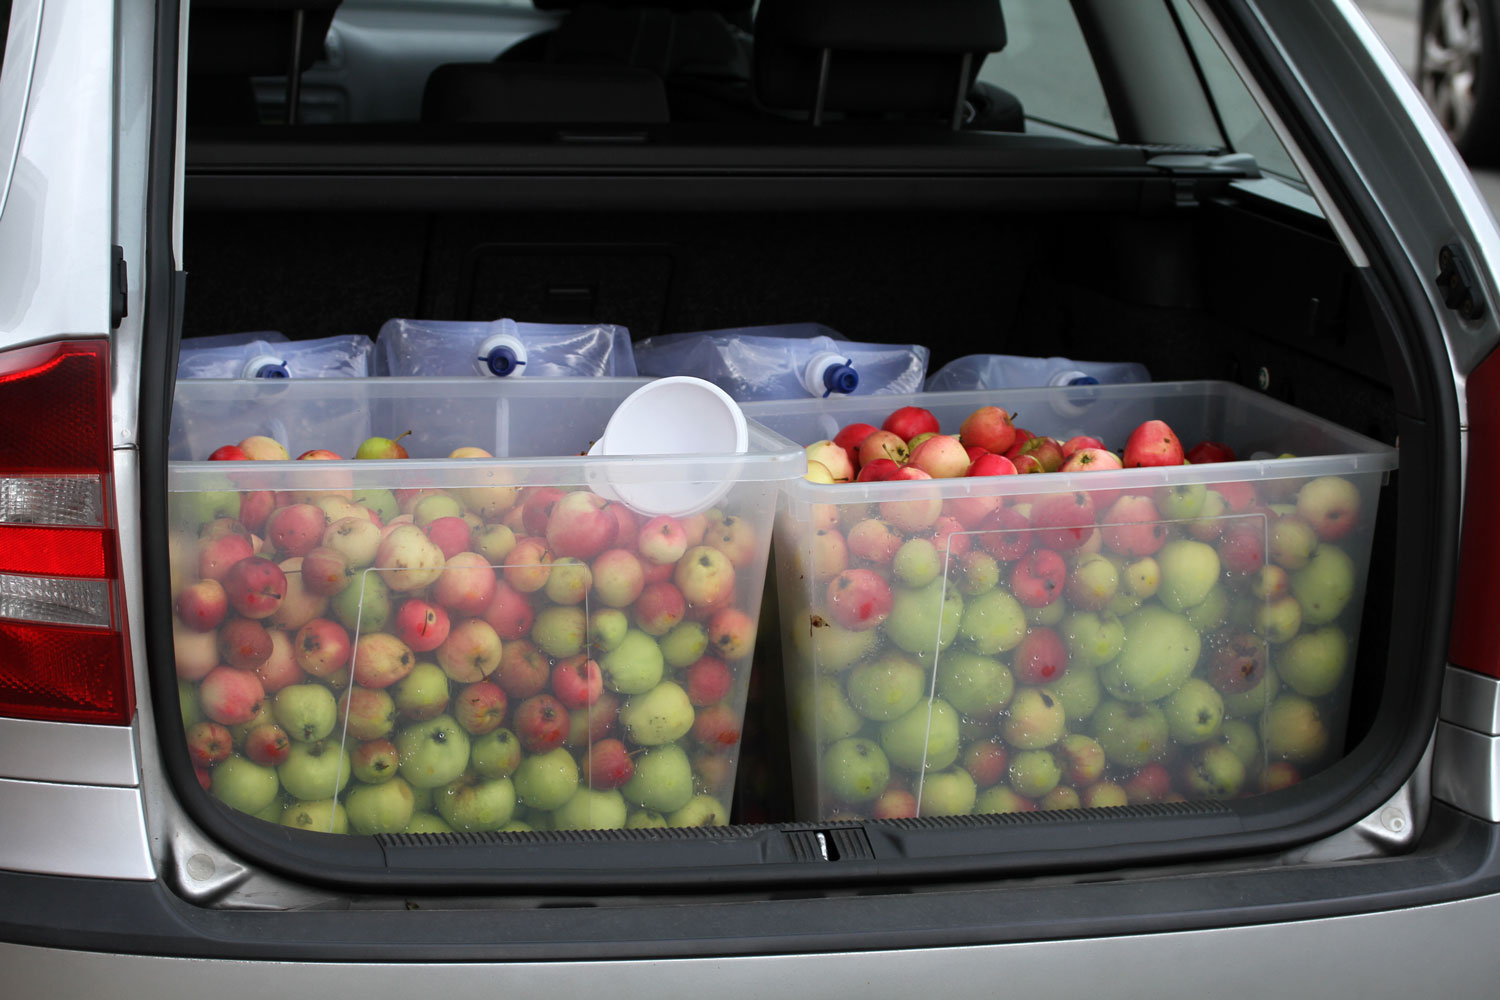 Bilen pakket med æbler klar til at blive til æblemost.